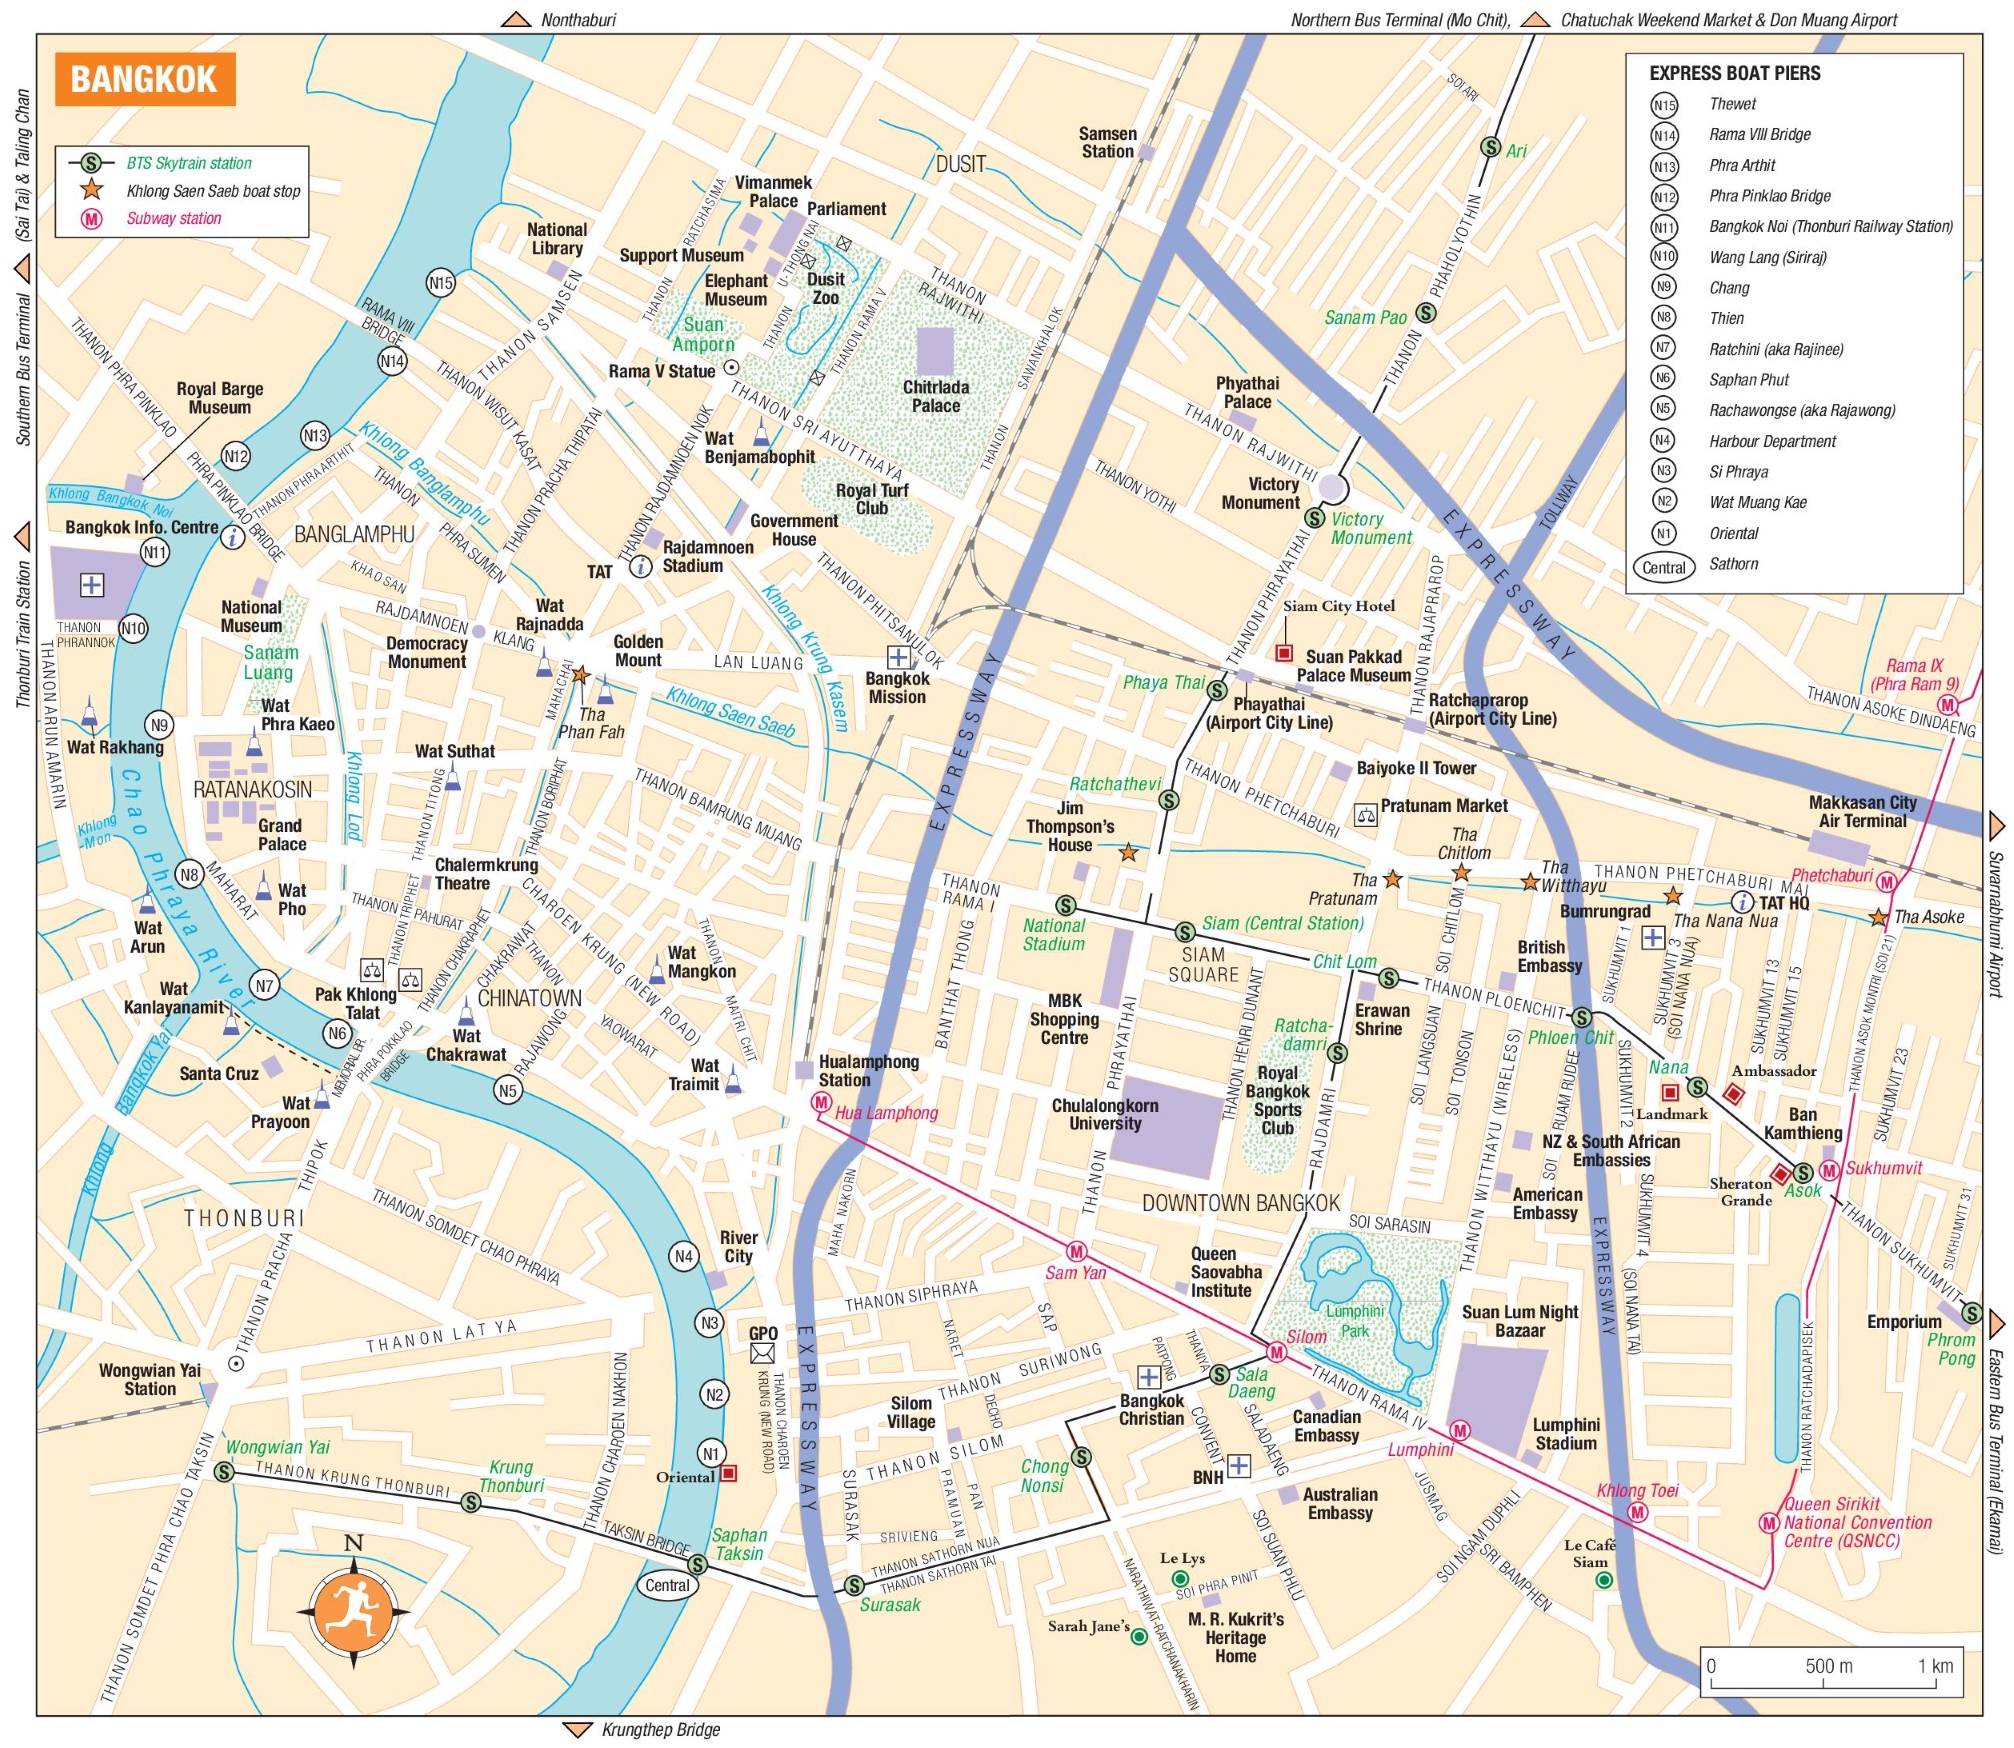 bangkok city map tourist